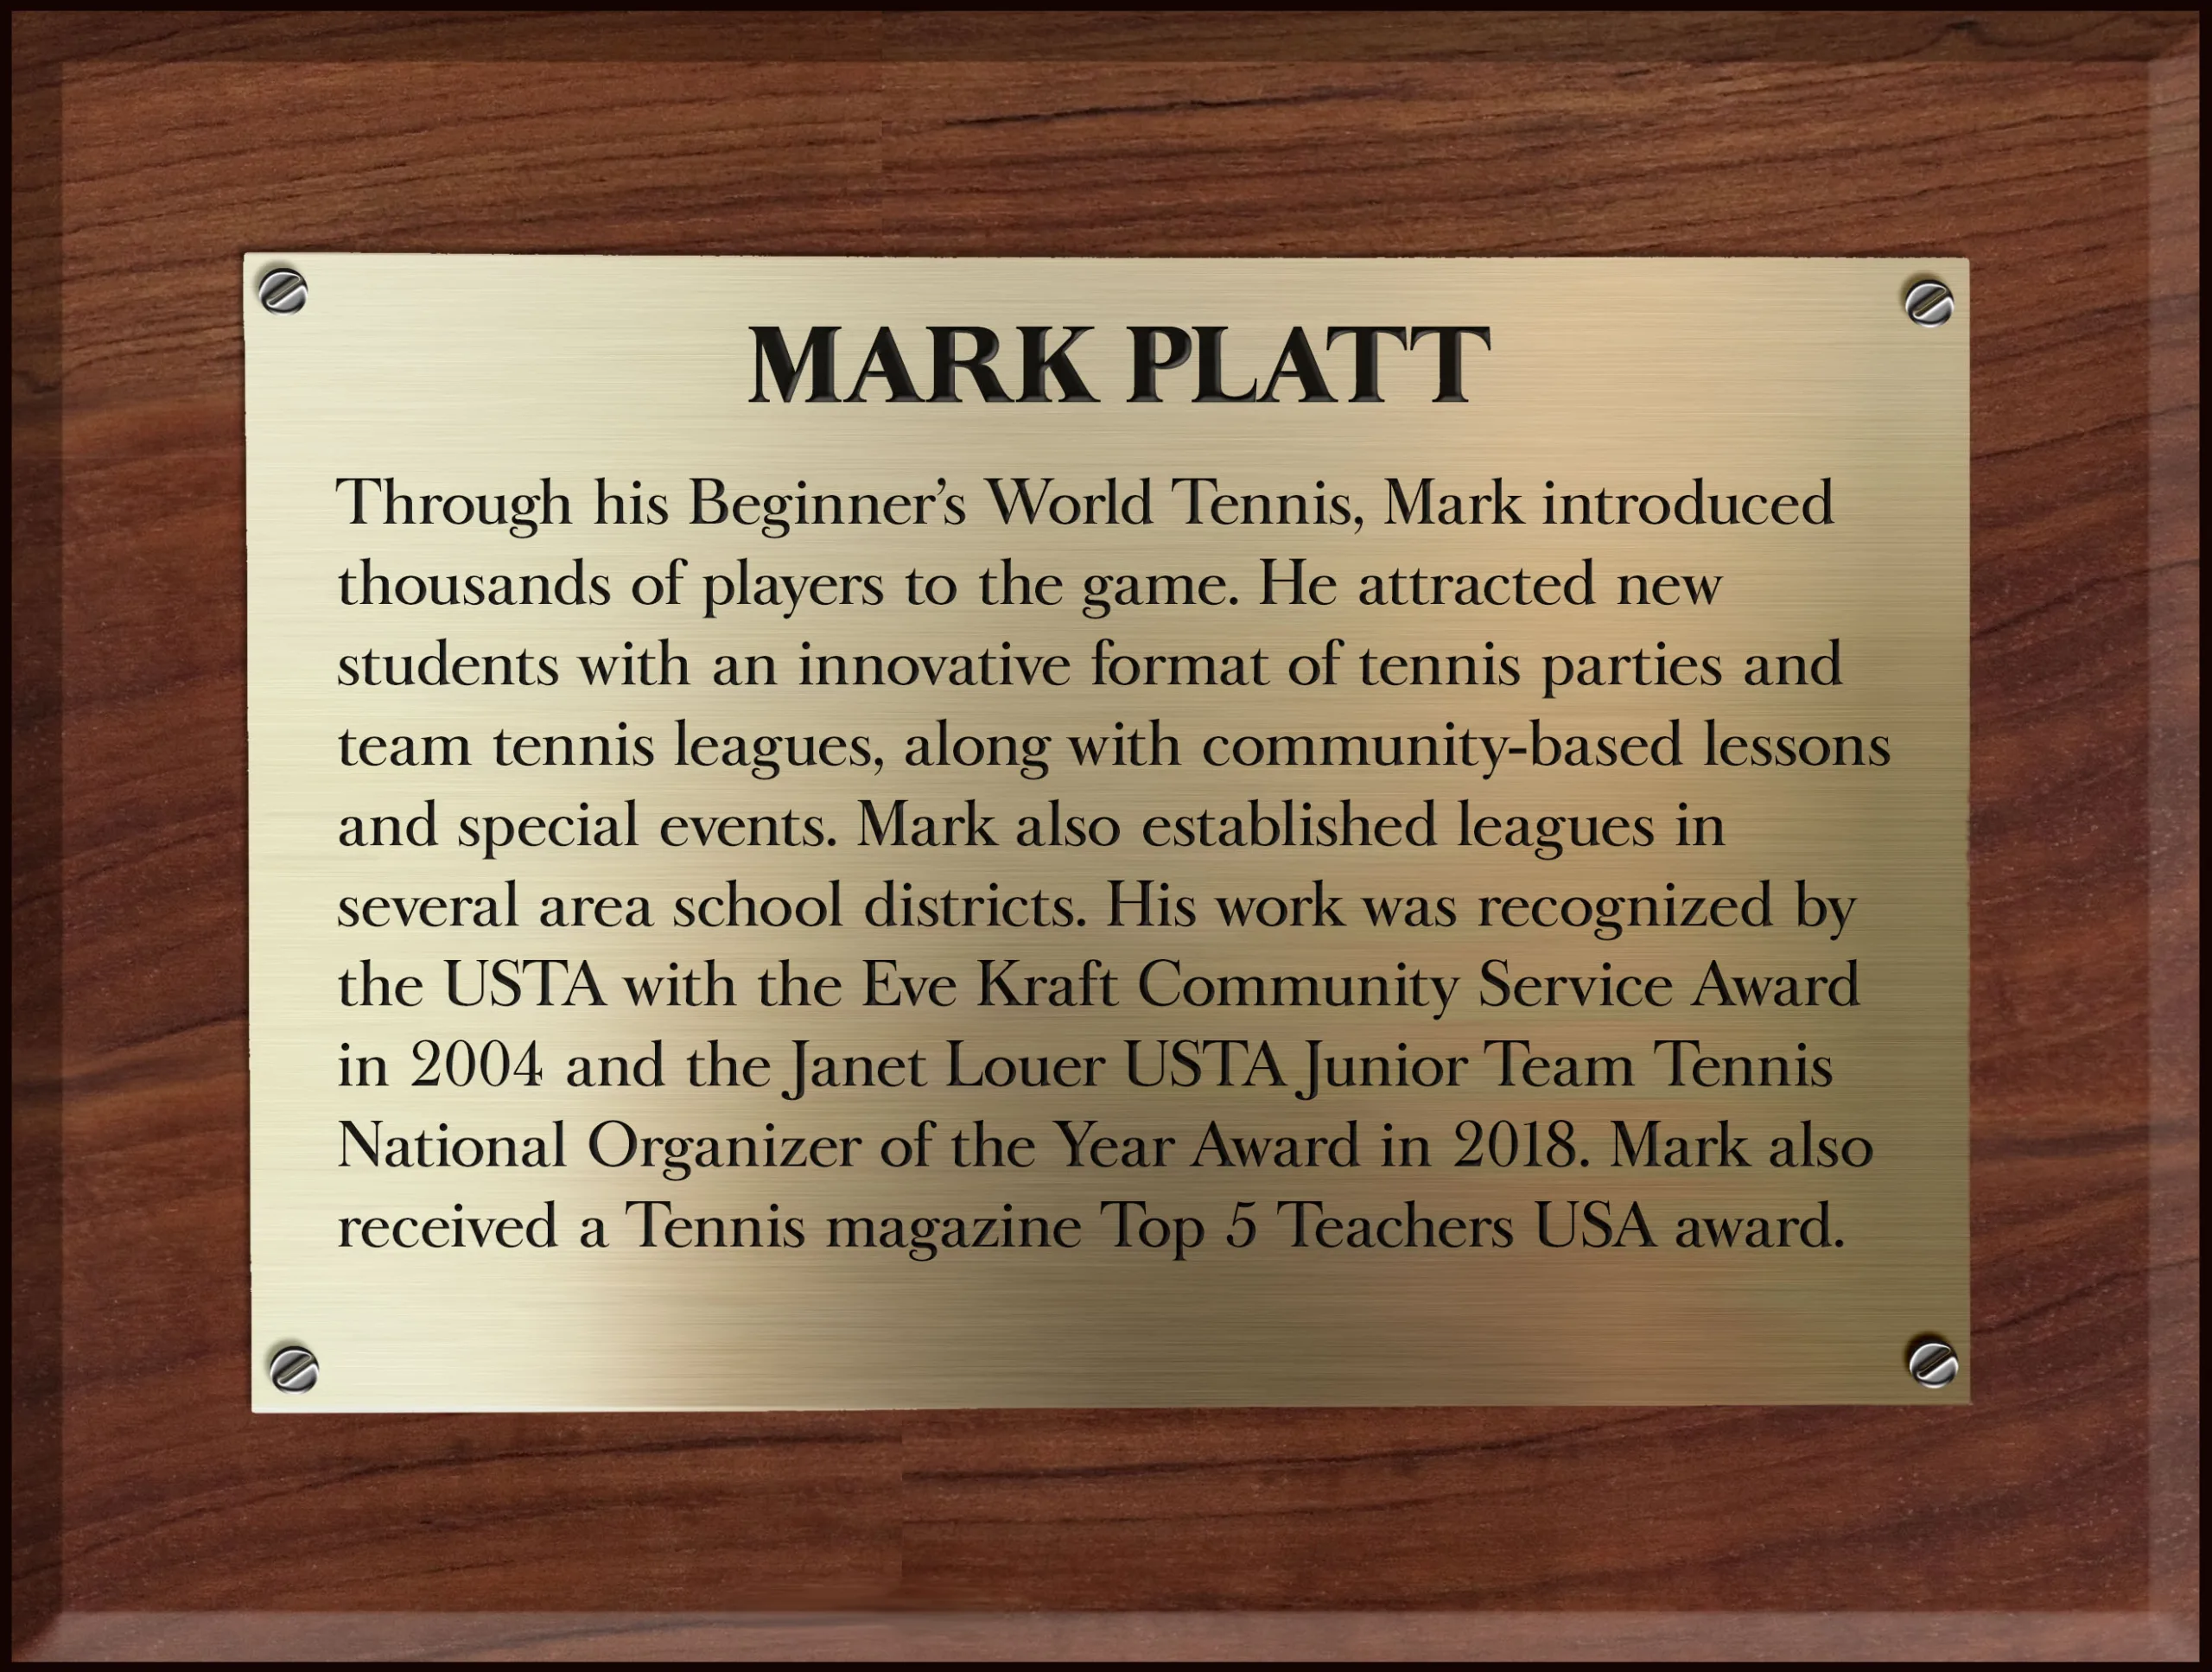 Mark Platt